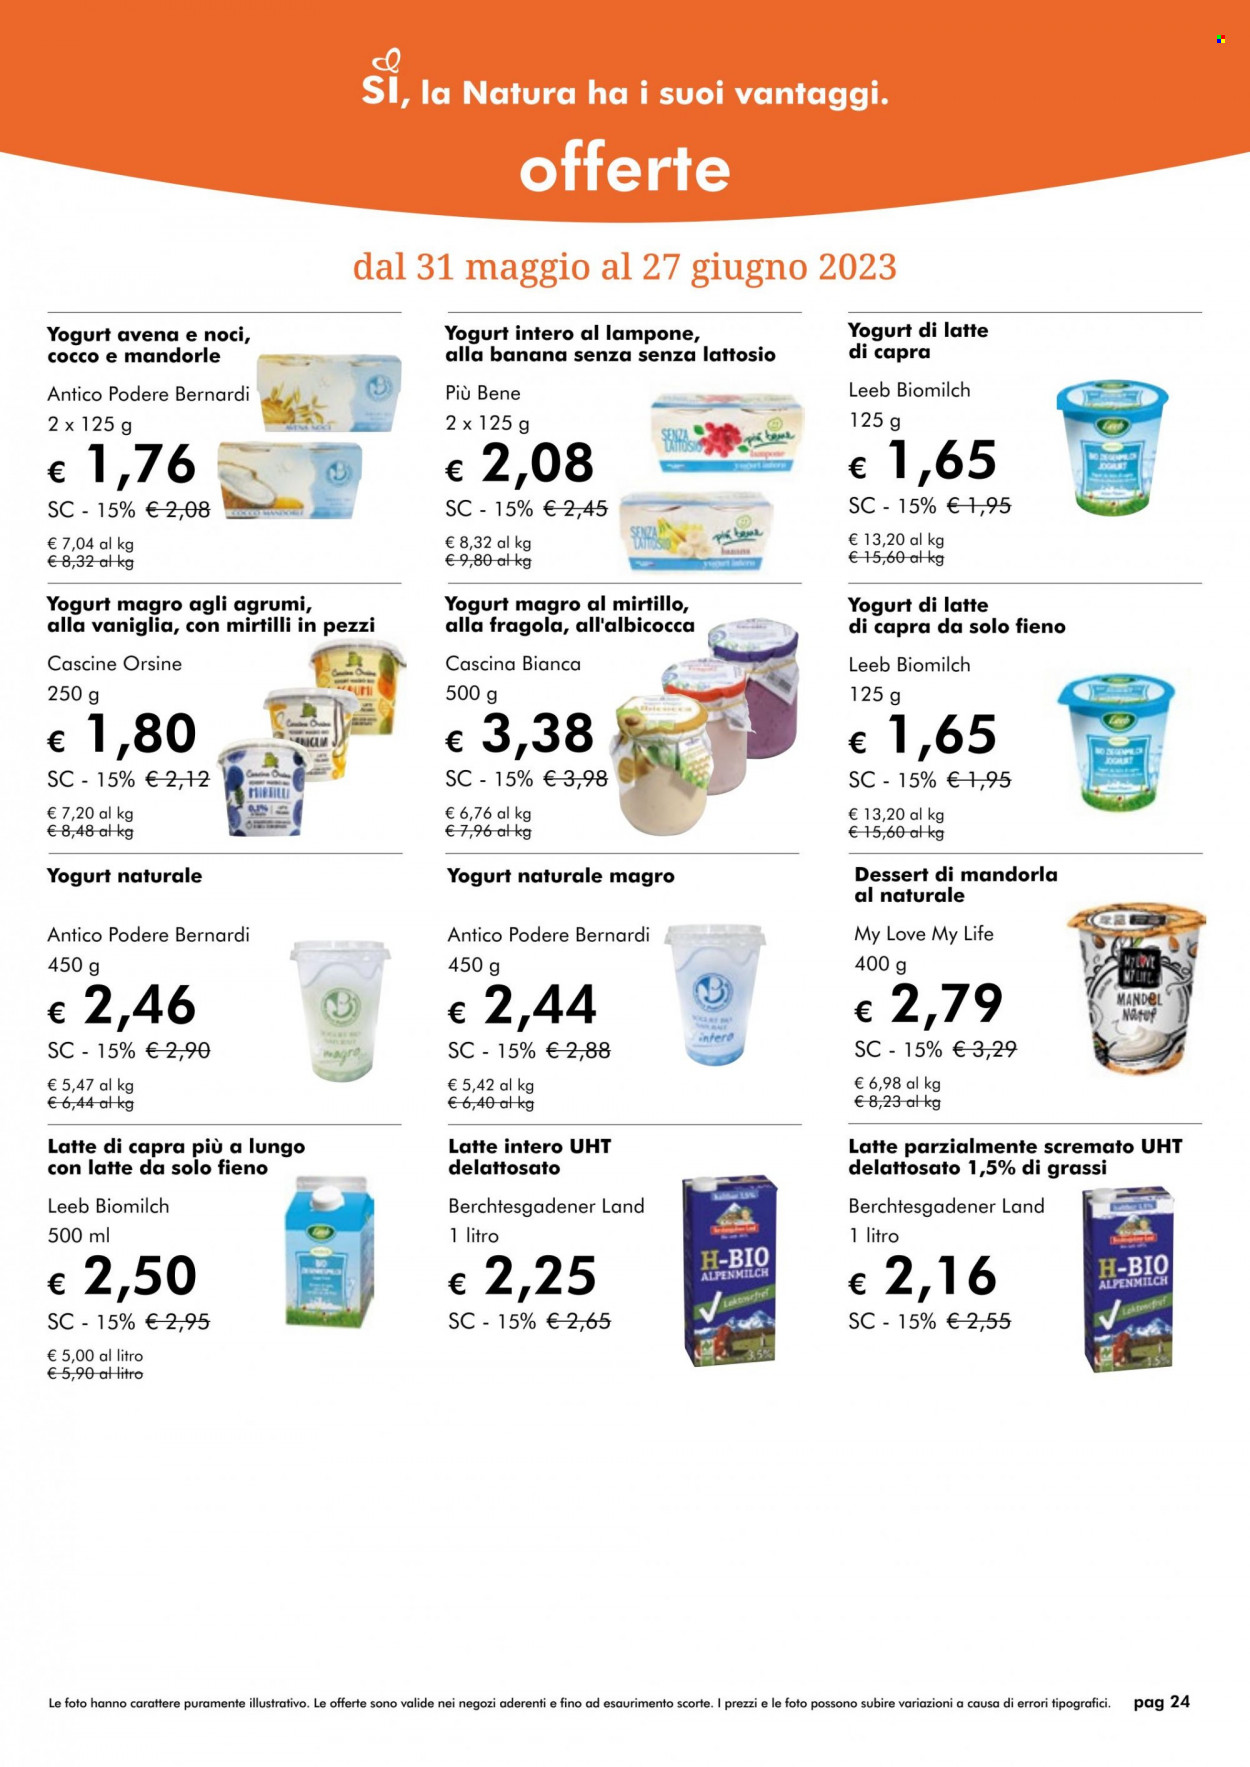 thumbnail - Volantino Natura Sì - 1/6/2023 - 30/6/2023 - Prodotti in offerta - yogurt, latte, latte intero, latte parzialmente scremato, fieno. Pagina 24.